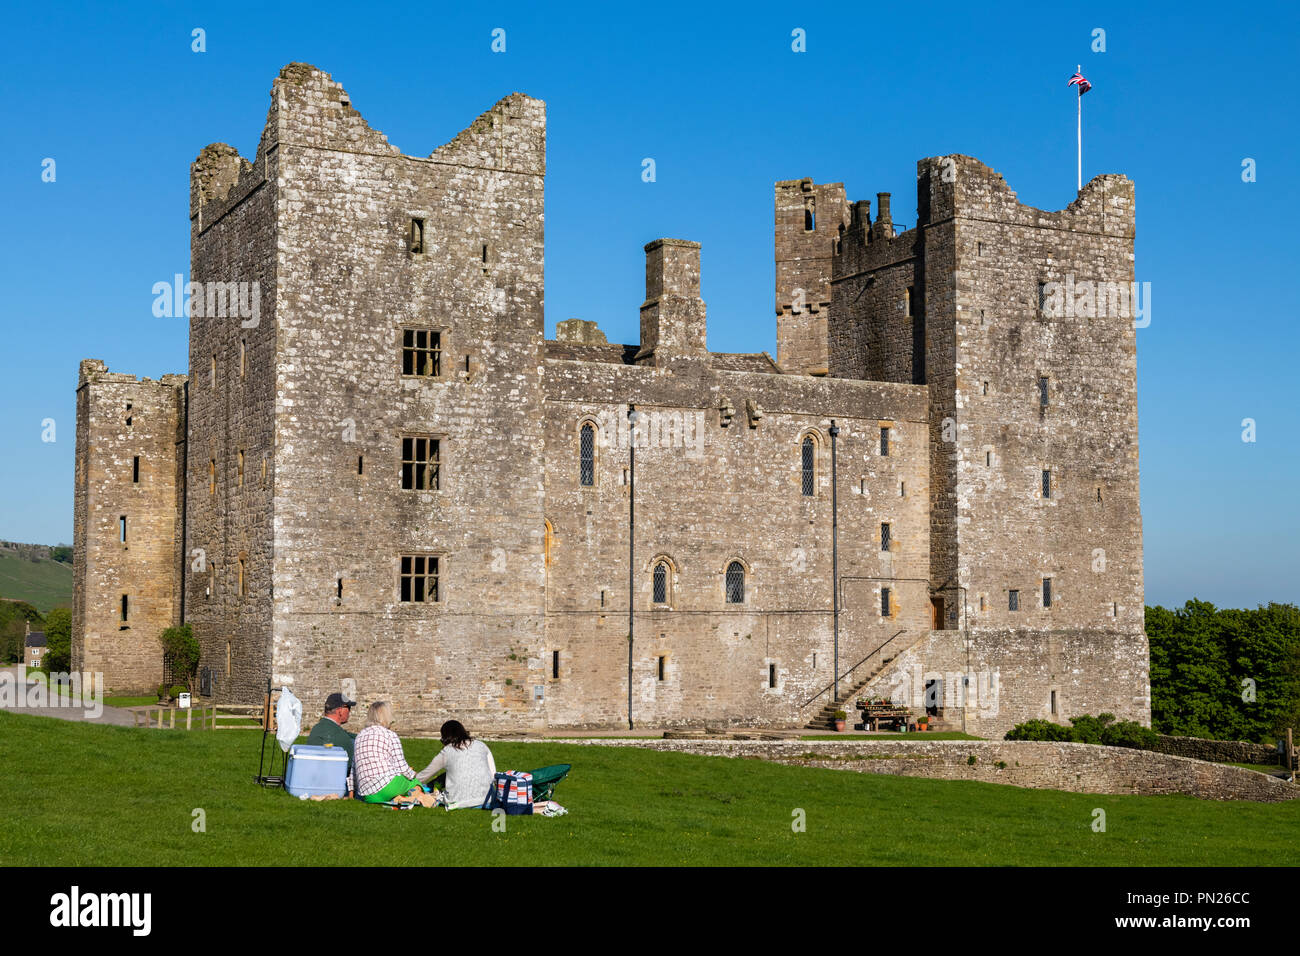 Die Leute sitzen & Picknick unter blauem Himmel durch historische mittelalterliche Burg in der wunderschönen Landschaft - Bolton Castle, Wensleydale, North Yorkshire, England, Grossbritannien Stockfoto